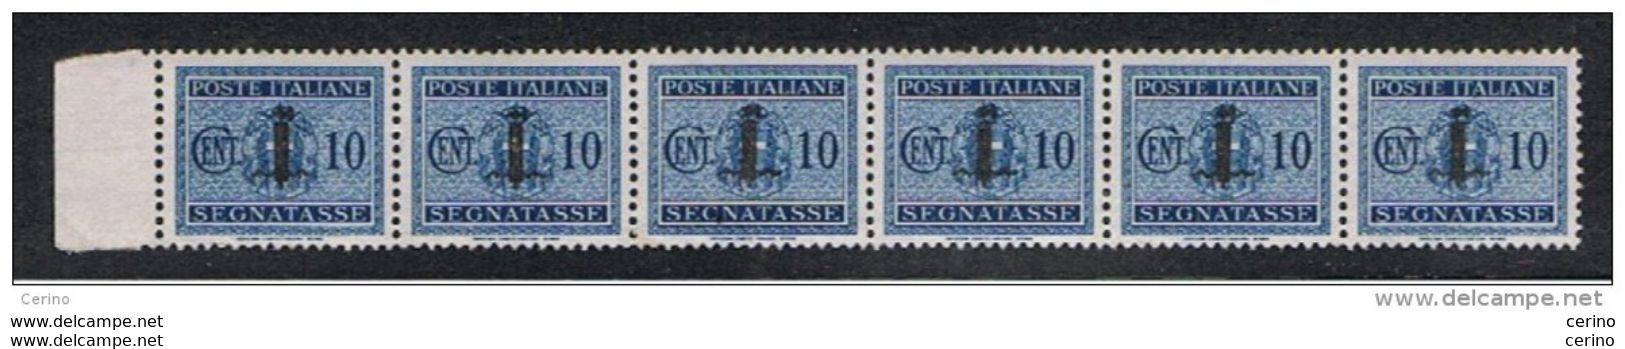 R.S.I.:  1944  TASSE  SOPRASTAMPATI  -  10 C. AZZURRO  STRISCIA  6  N. -  SASS. 61 - Portomarken